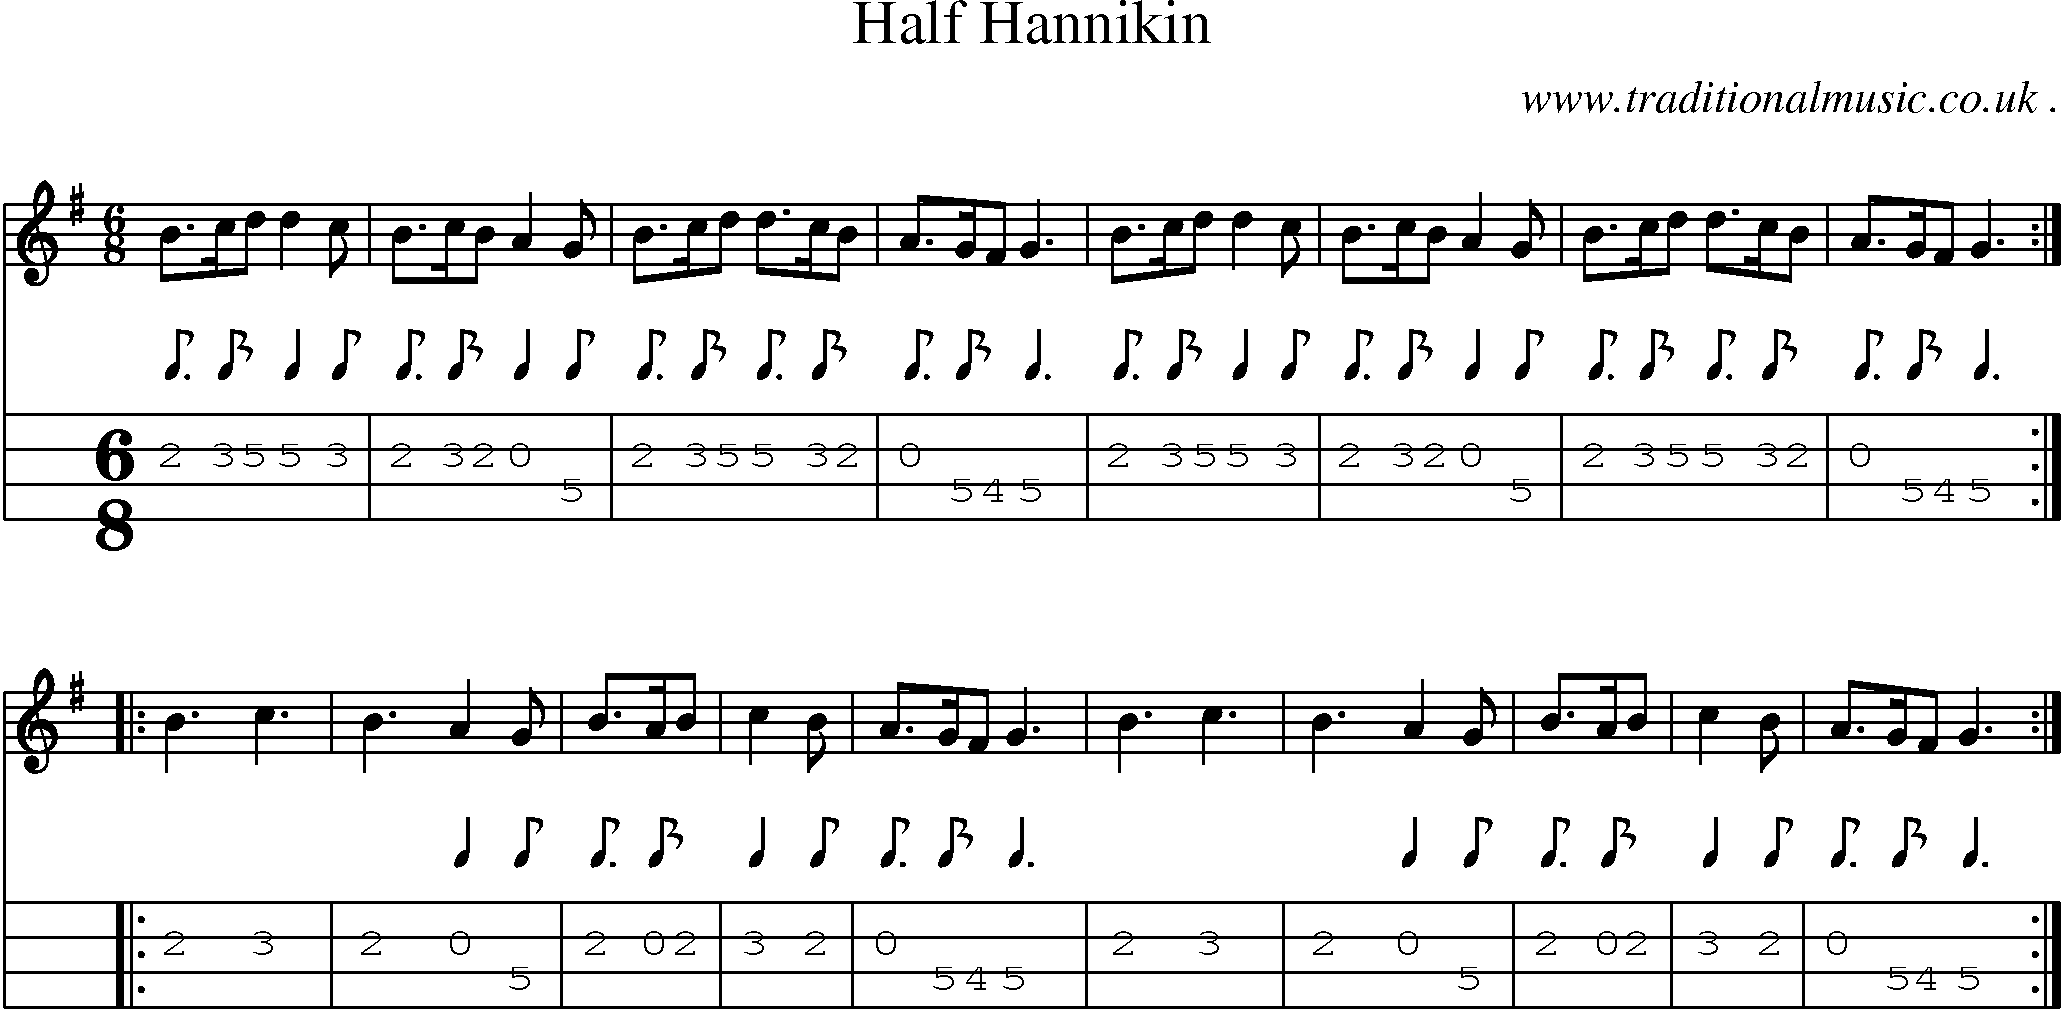 Sheet-Music and Mandolin Tabs for Half Hannikin